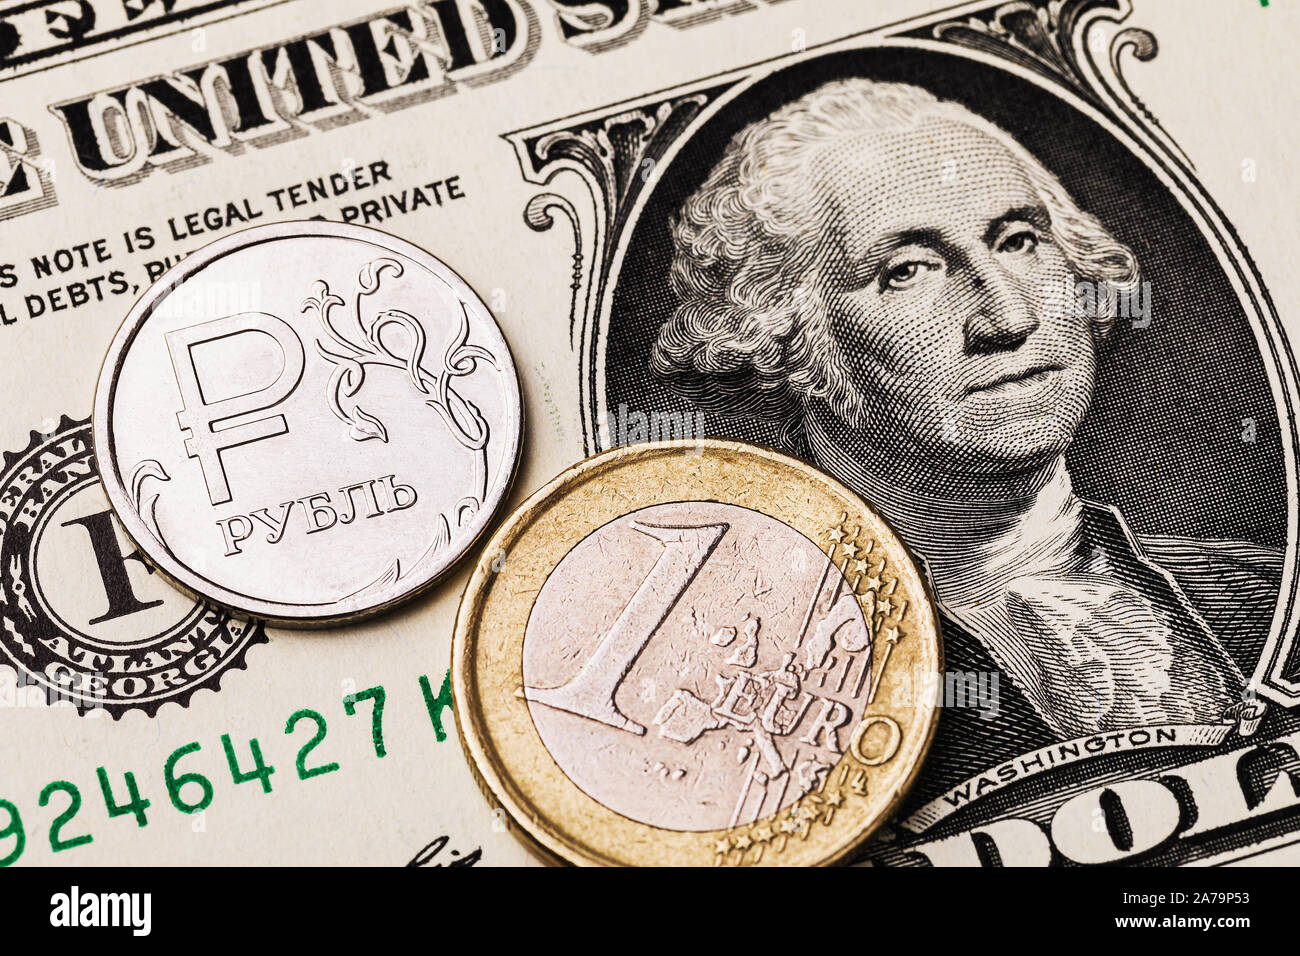 Ein Euro Münze und Russische Rubel vor dem Hintergrund von einem Dollar Bill. Die Münze hat eine Inschrift in russischen Buchstaben Rubel Stockfoto